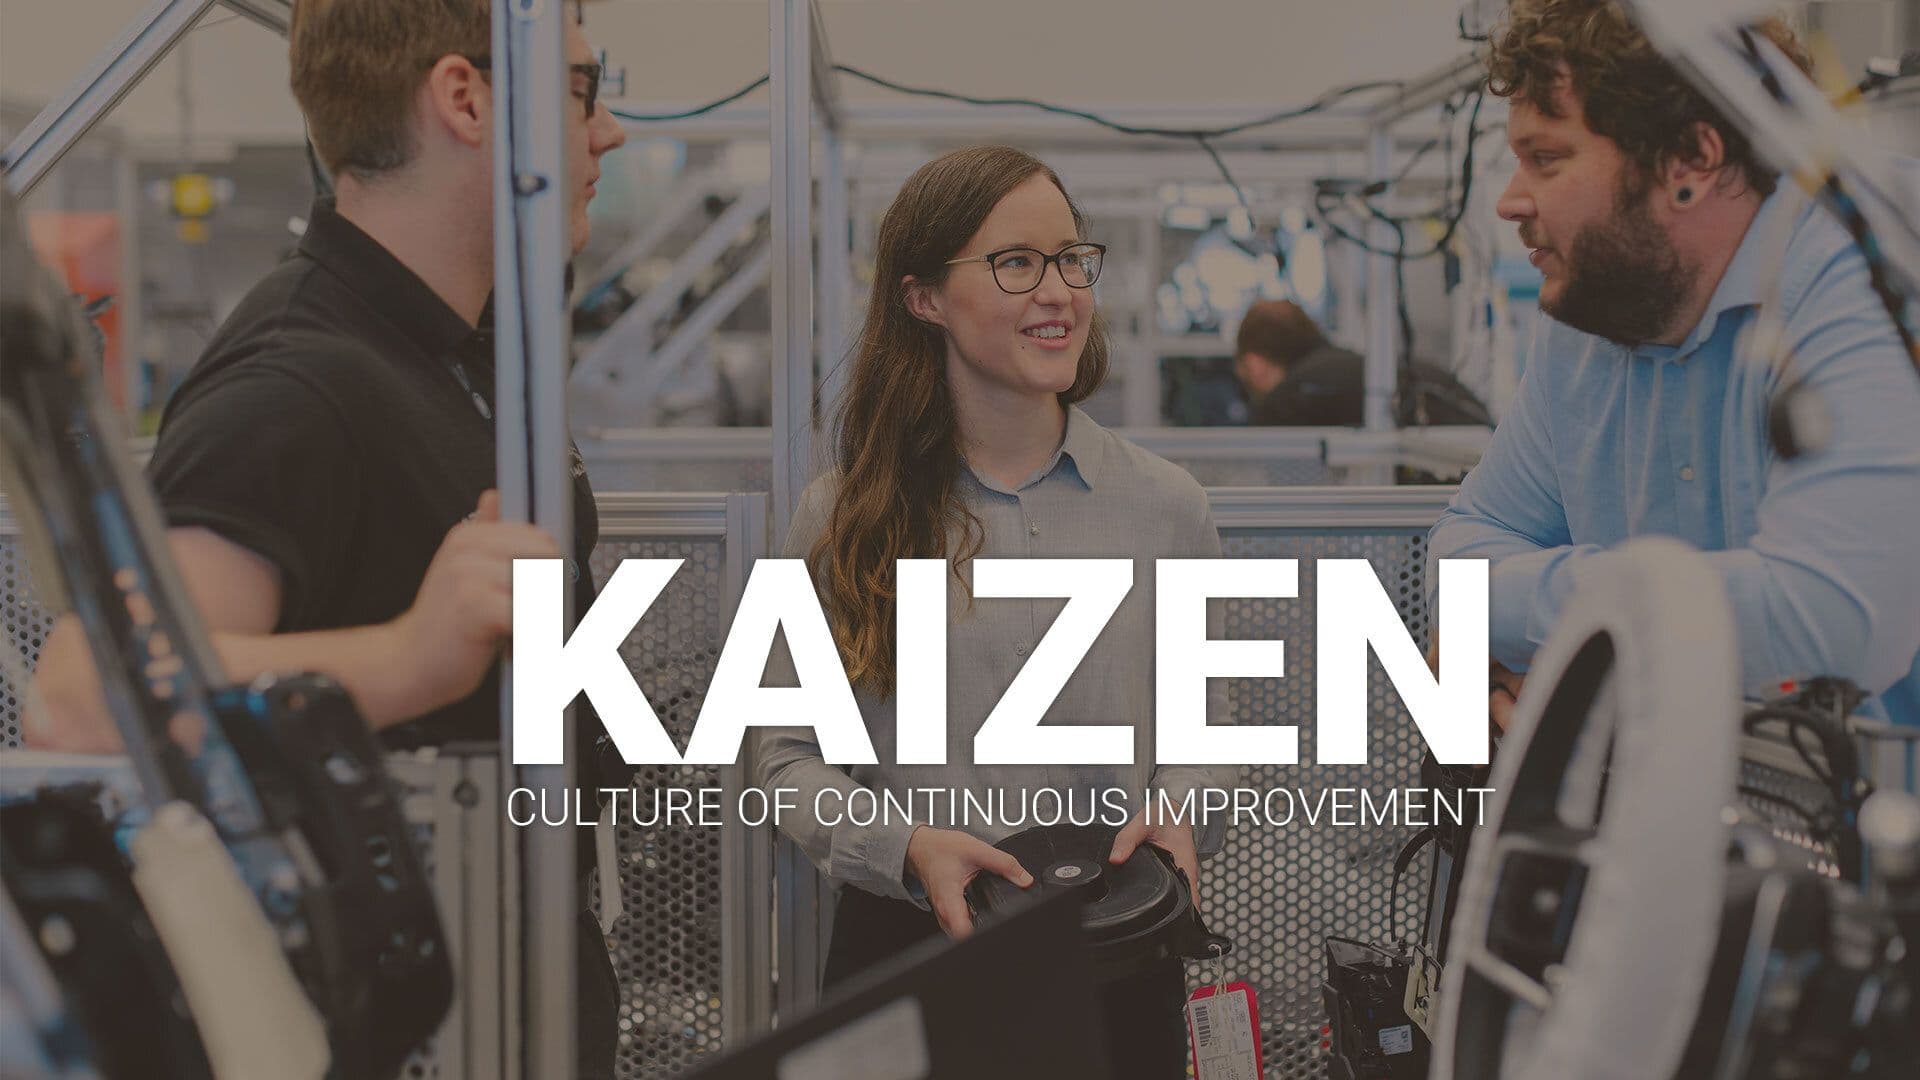 Trois conditions pour une culture d’amélioration continue (kaizen)